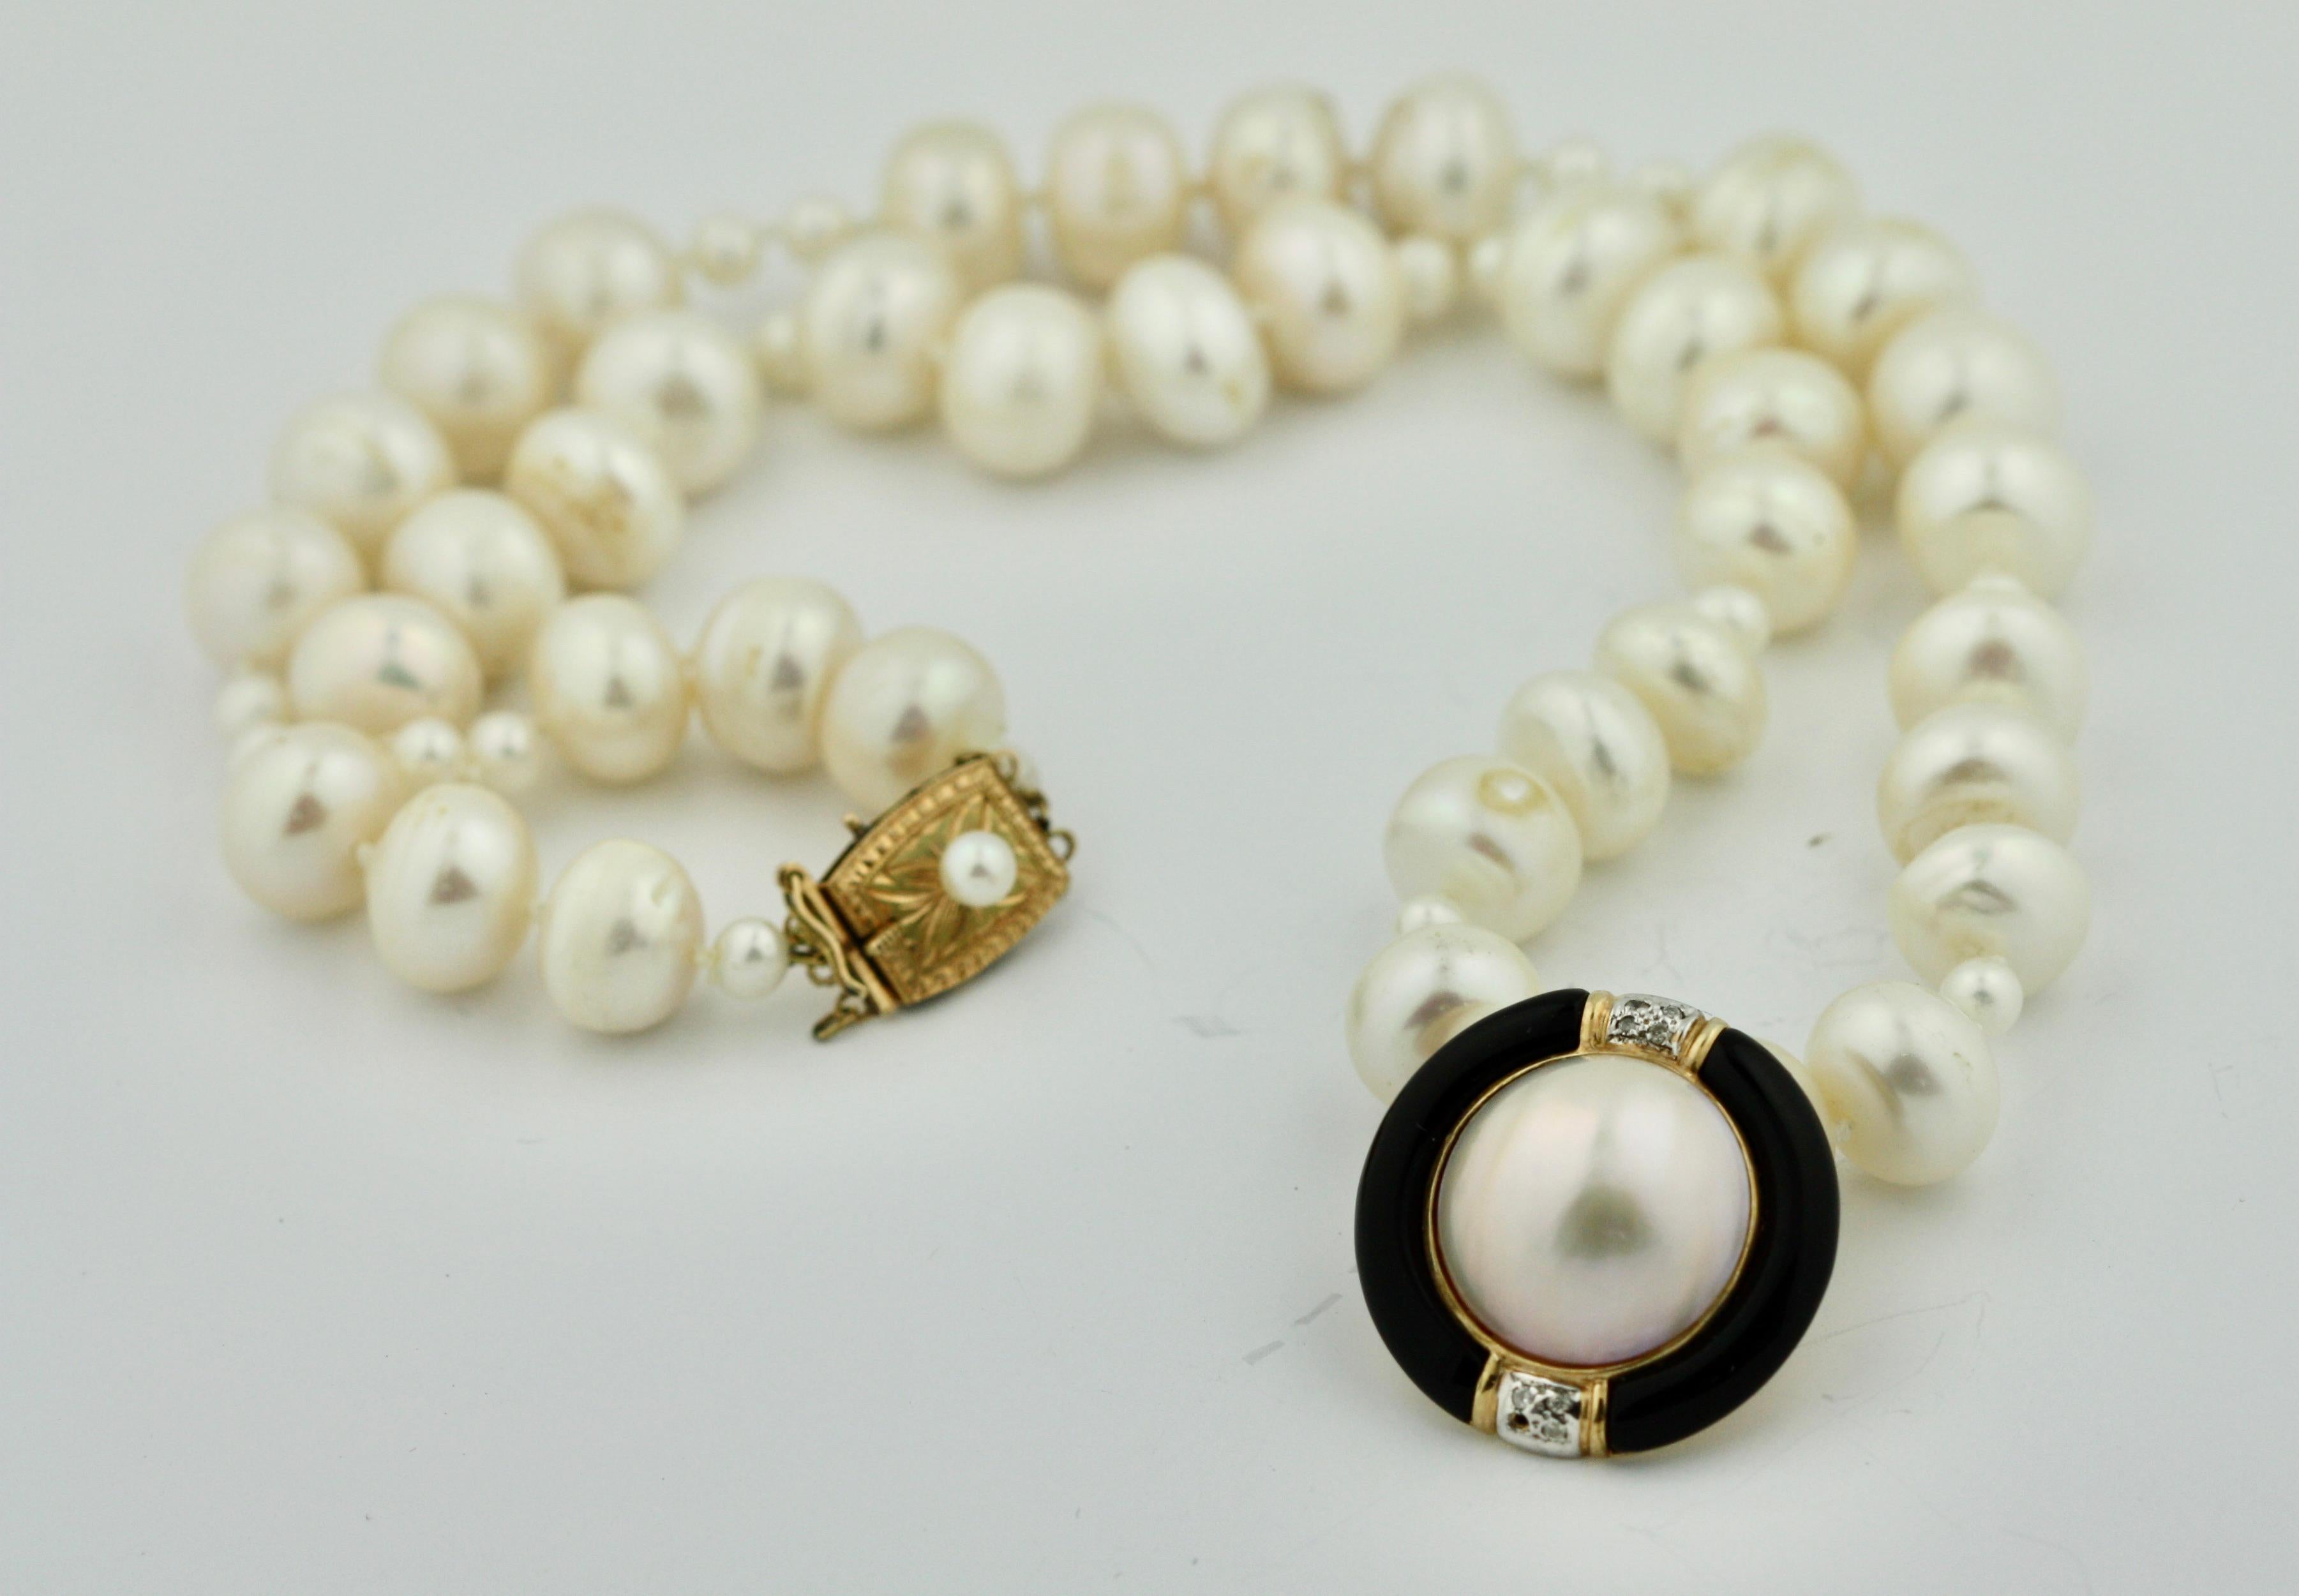 14 Karat Gold, Zuchtperle, Mabé-Perle, Onyx und Diamant-Halskette 
Der Einzelstrang besteht aus Zuchtperlen mit einer Größe von etwa 4,2 bis 10 mm, 
vervollständigt durch eine goldene Schließe, besetzt mit einer Zuchtperle, Länge 18 Zoll.